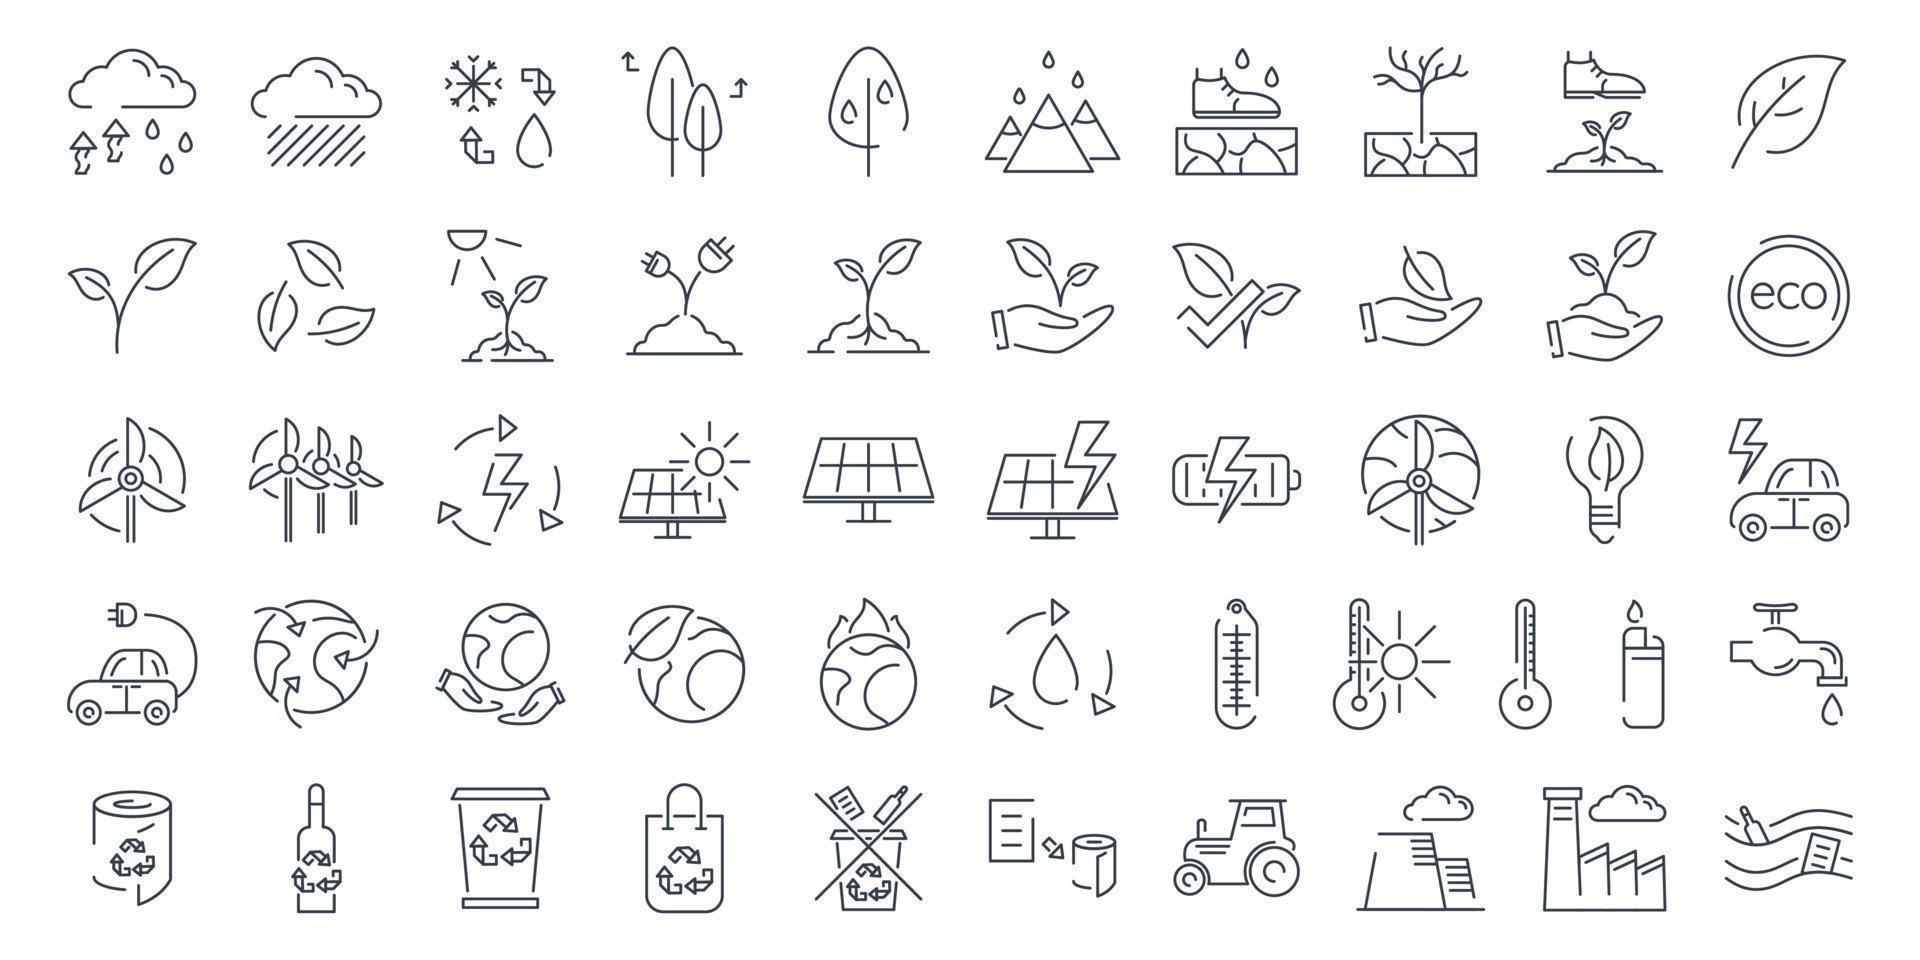 grande conjunto de ícones de linha isolada de vetores sobre o tema da ecologia, clima, poluição e conservação ambiental.